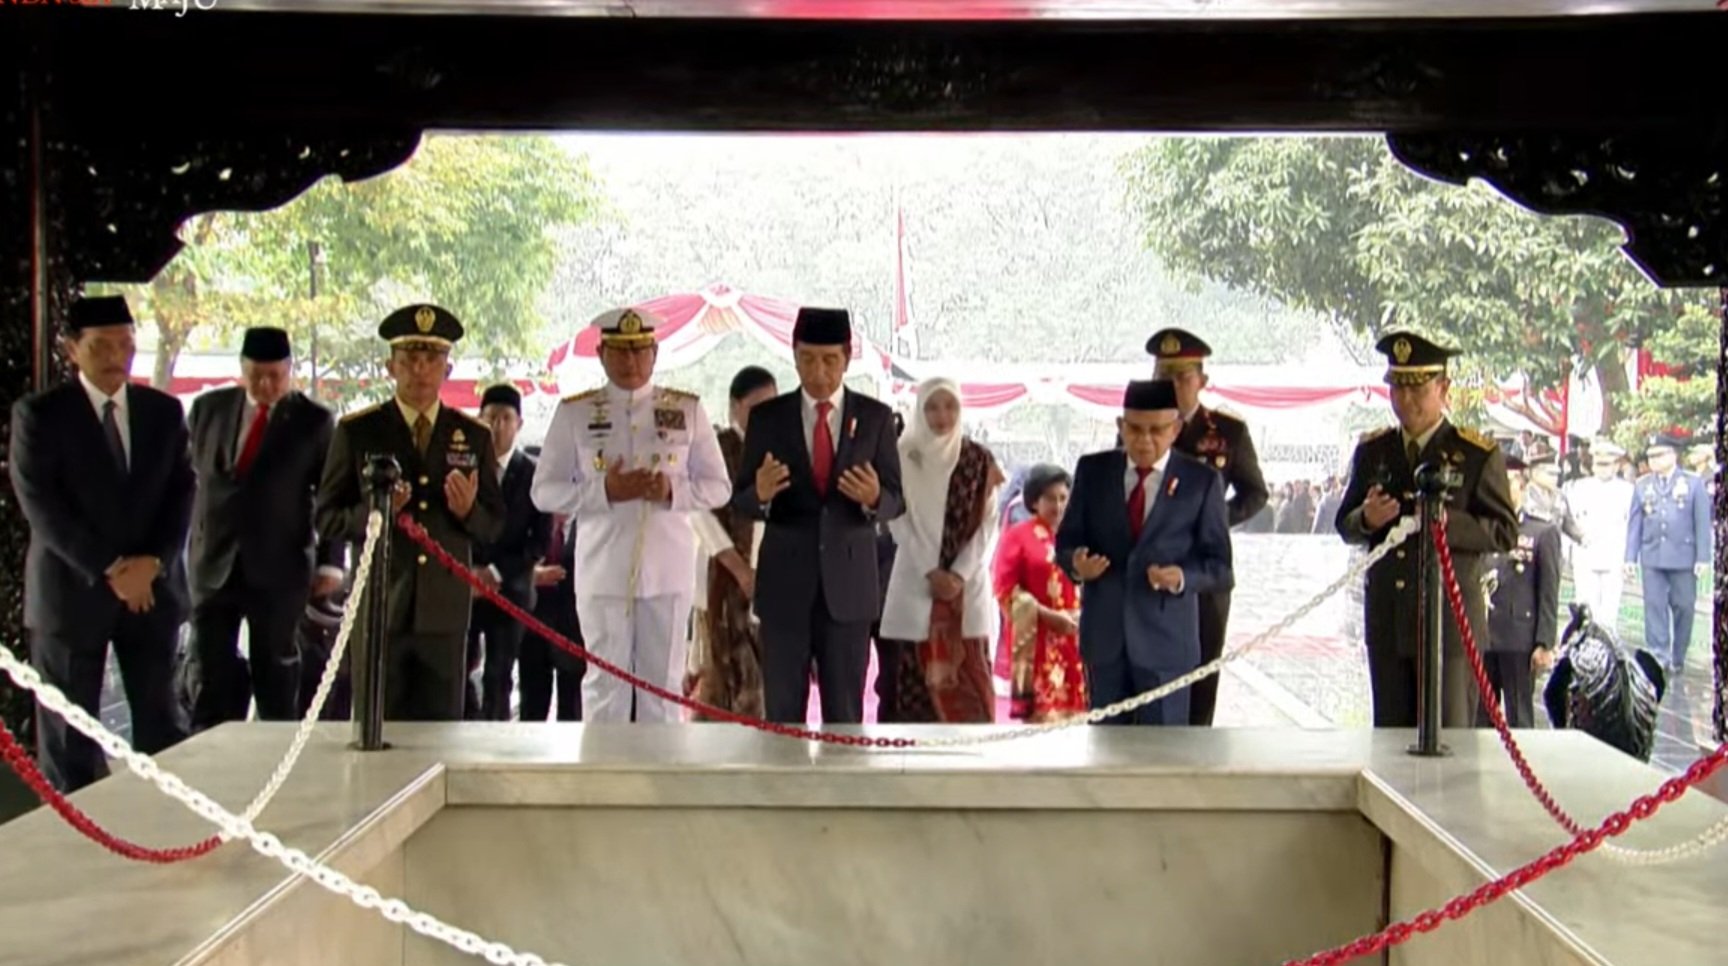 Suasana khidmat para Menteri Kabinet Indonesia Maju bersama Presiden Jokowi di Lubang Buaya (Sinpo.id/Setkab)